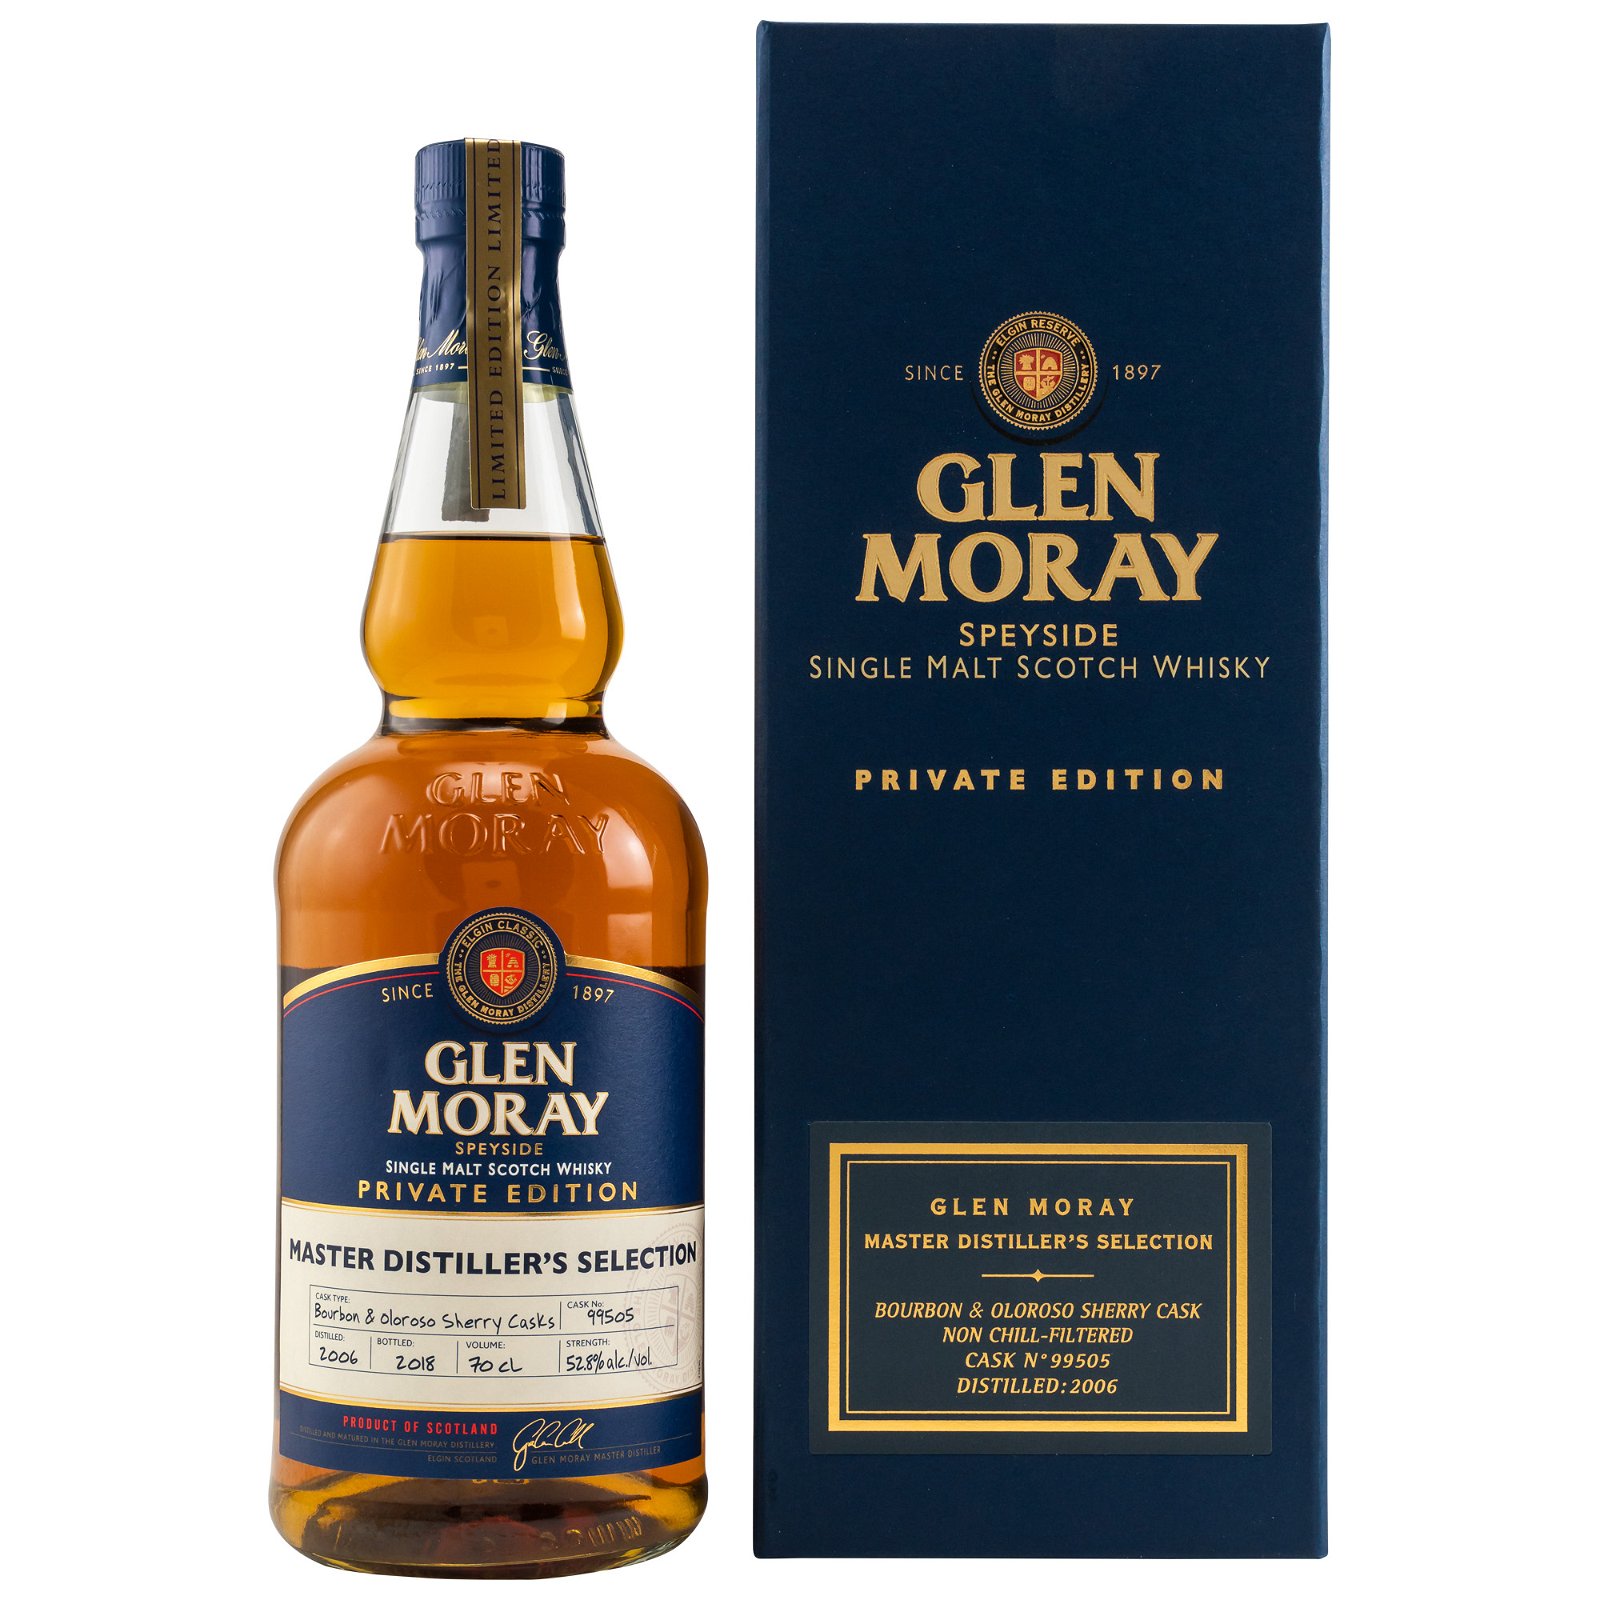 Glen Moray 2006/2018 Bourbon & Oloroso Sherry Cask No. 99505 Private Edition